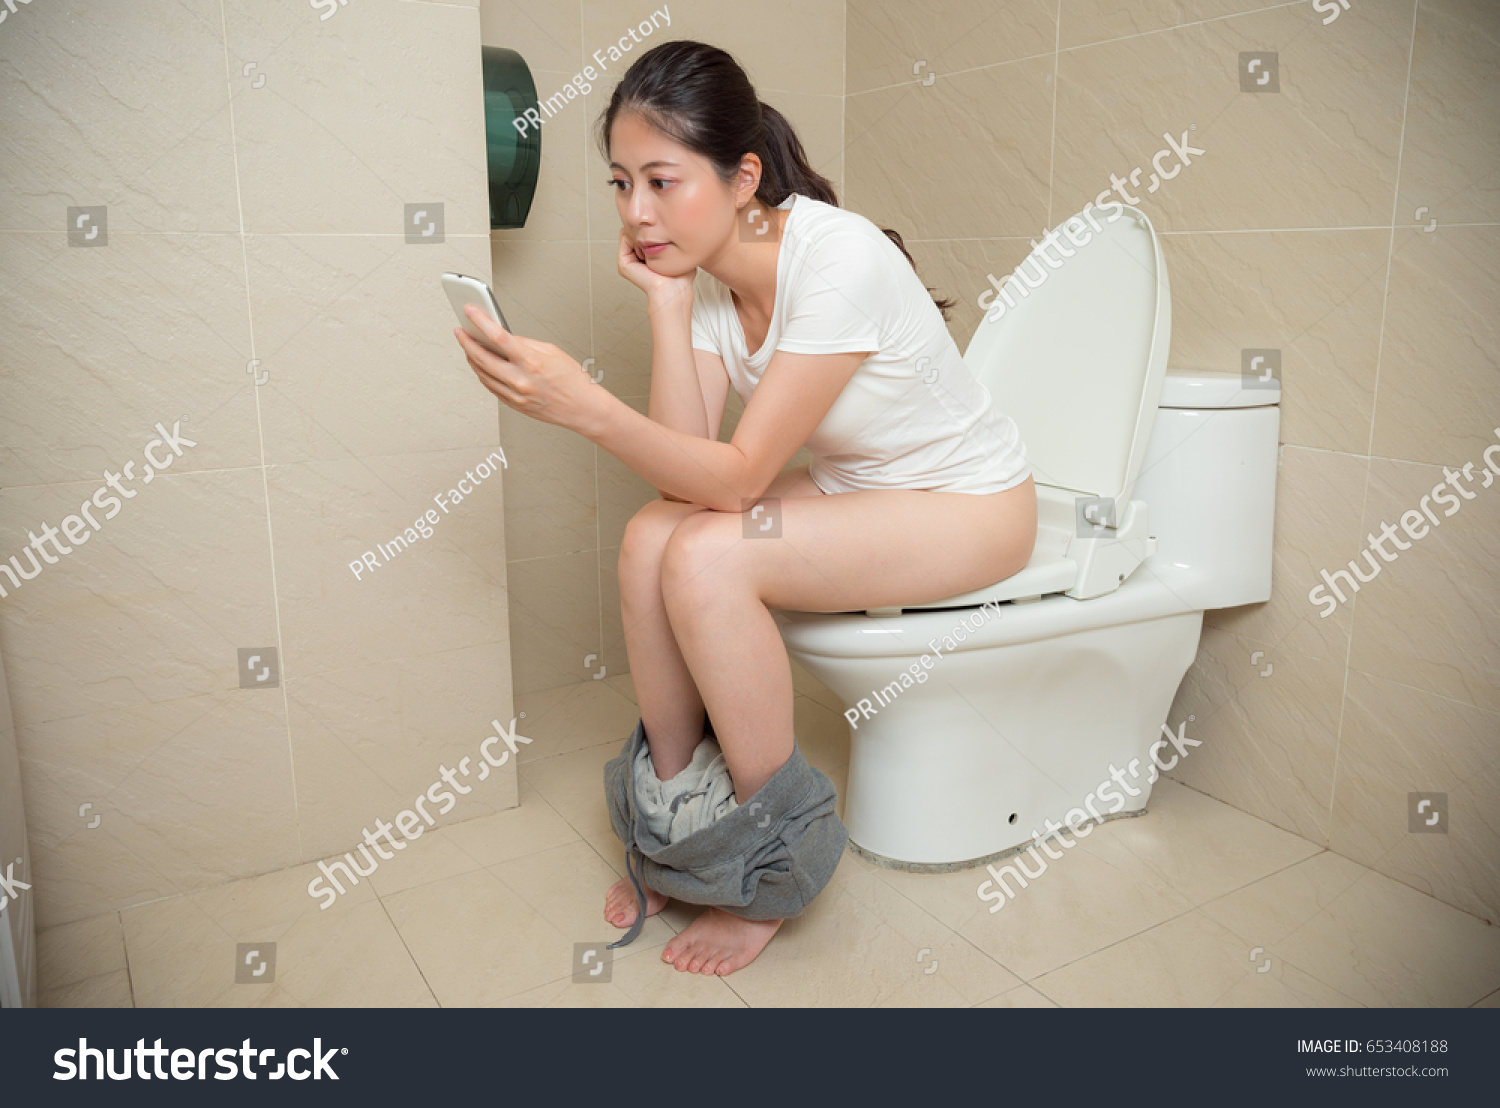 Тетя в панамке поссала в деревянном туалете